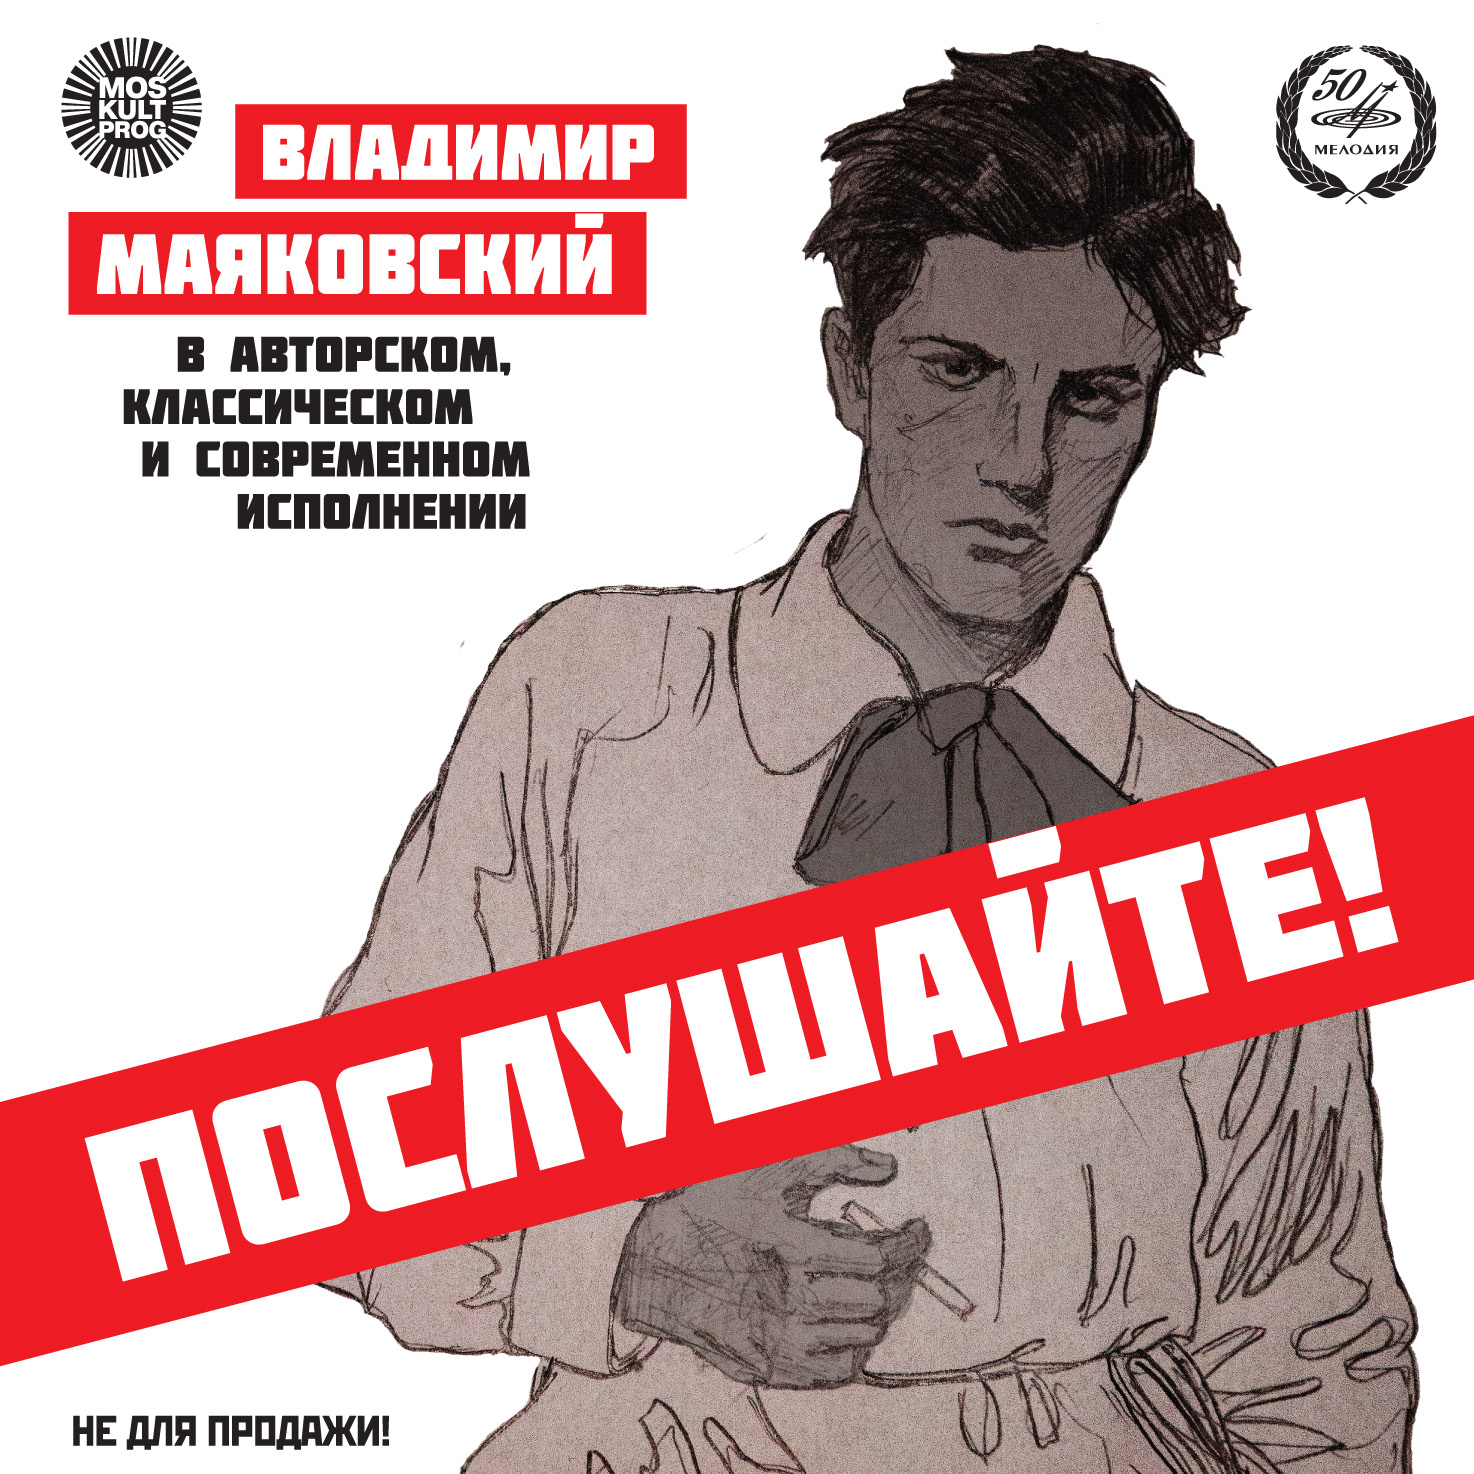 При поддержке НФПП издан диск со стихами Владимира Маяковского